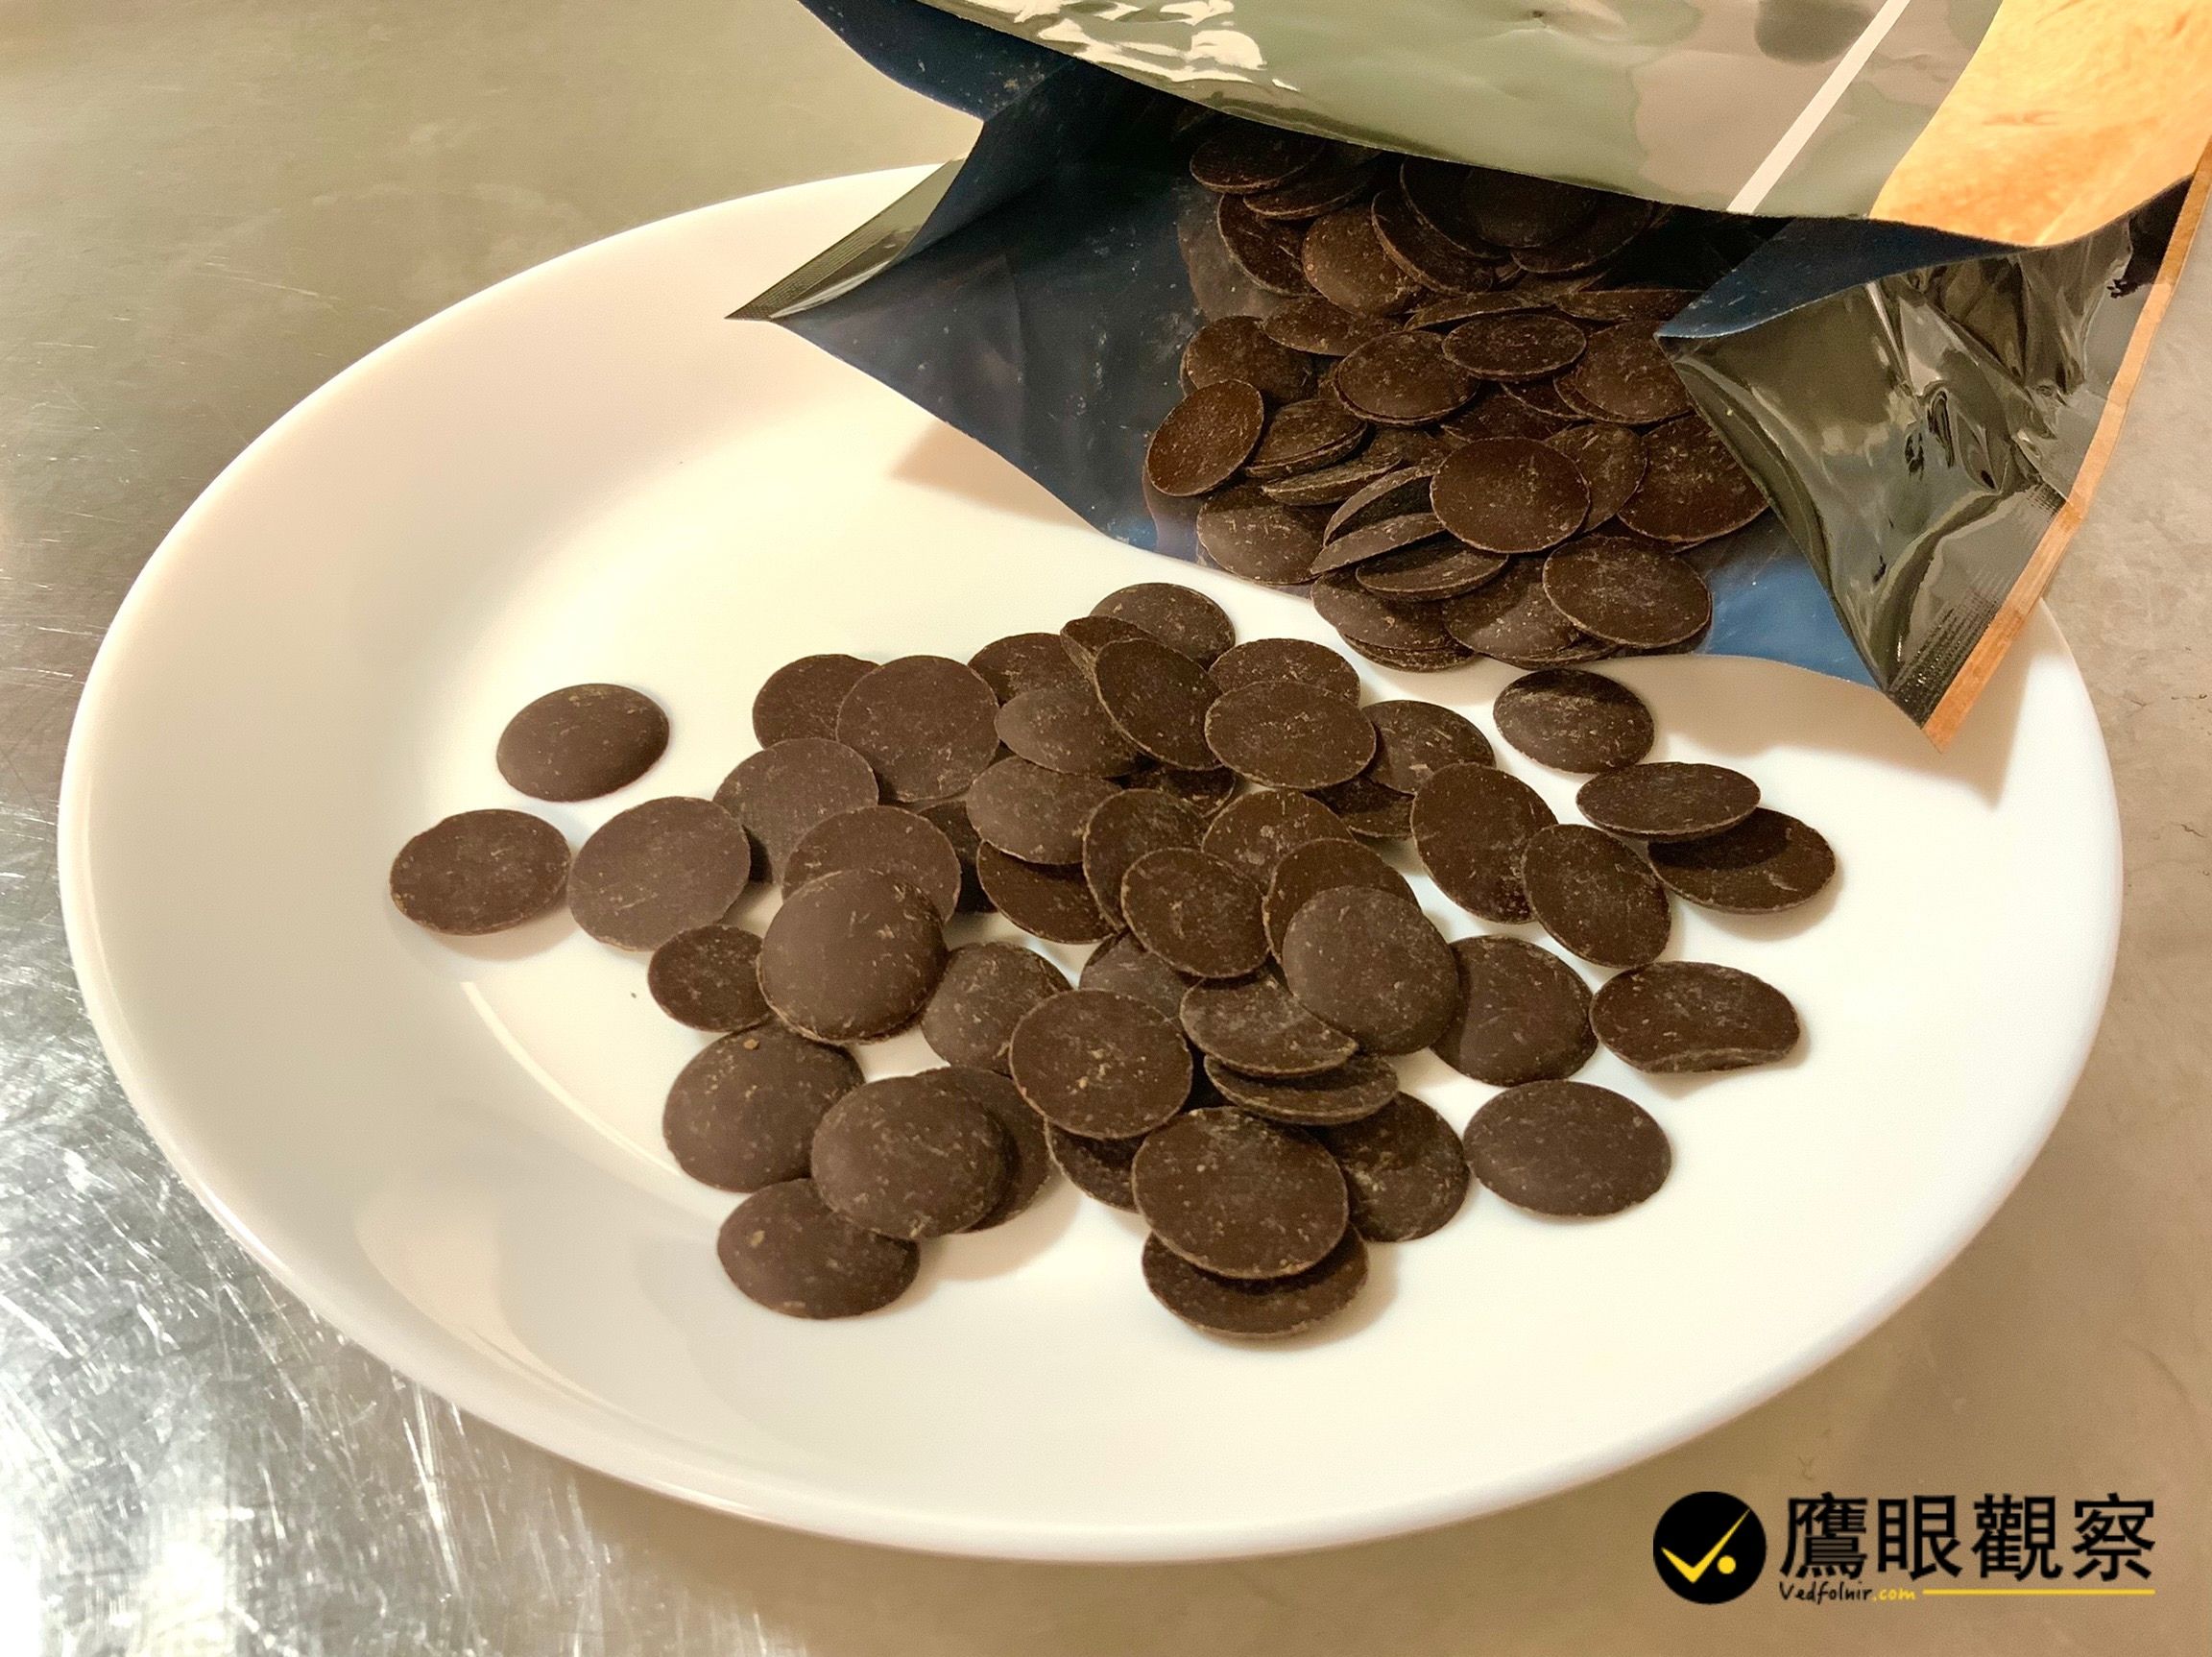 GCB 63% 調溫苦甜鈕扣型黑巧克力 是健康養生或肥胖體驗